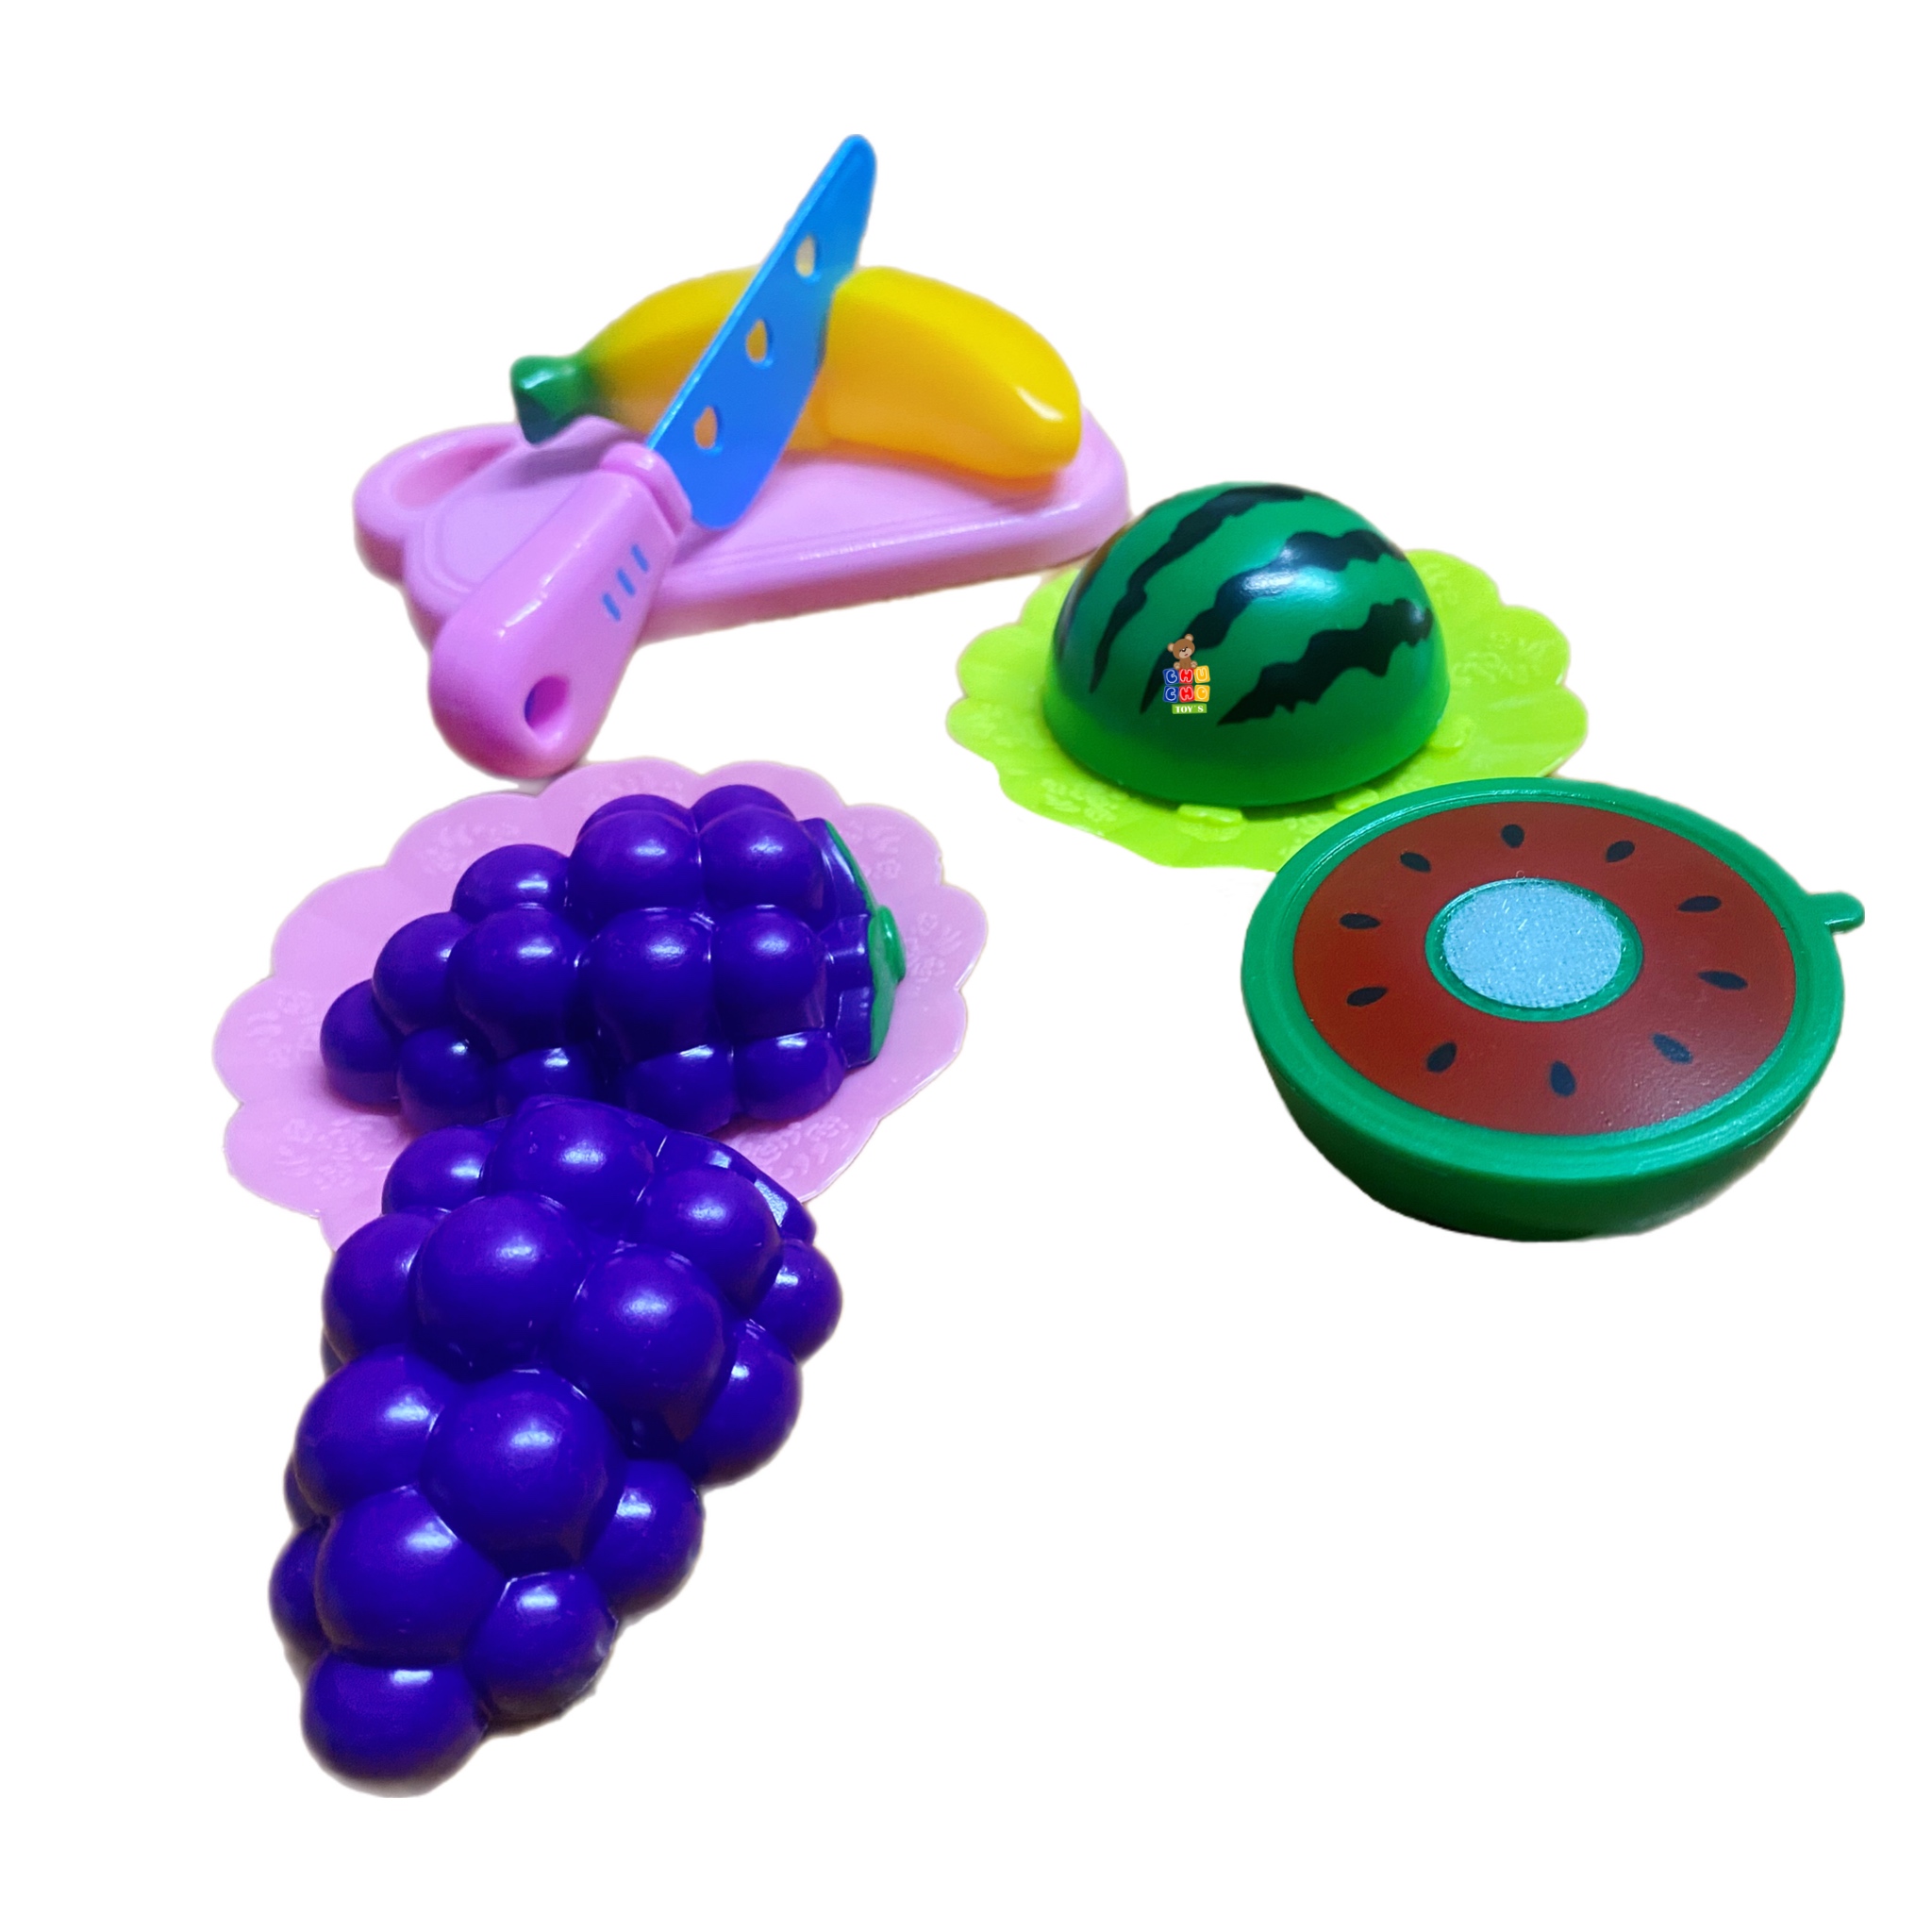 Juguetes para cortar frutas, juguete de frutas y verduras para niños, Juguetes de cocina con frutas